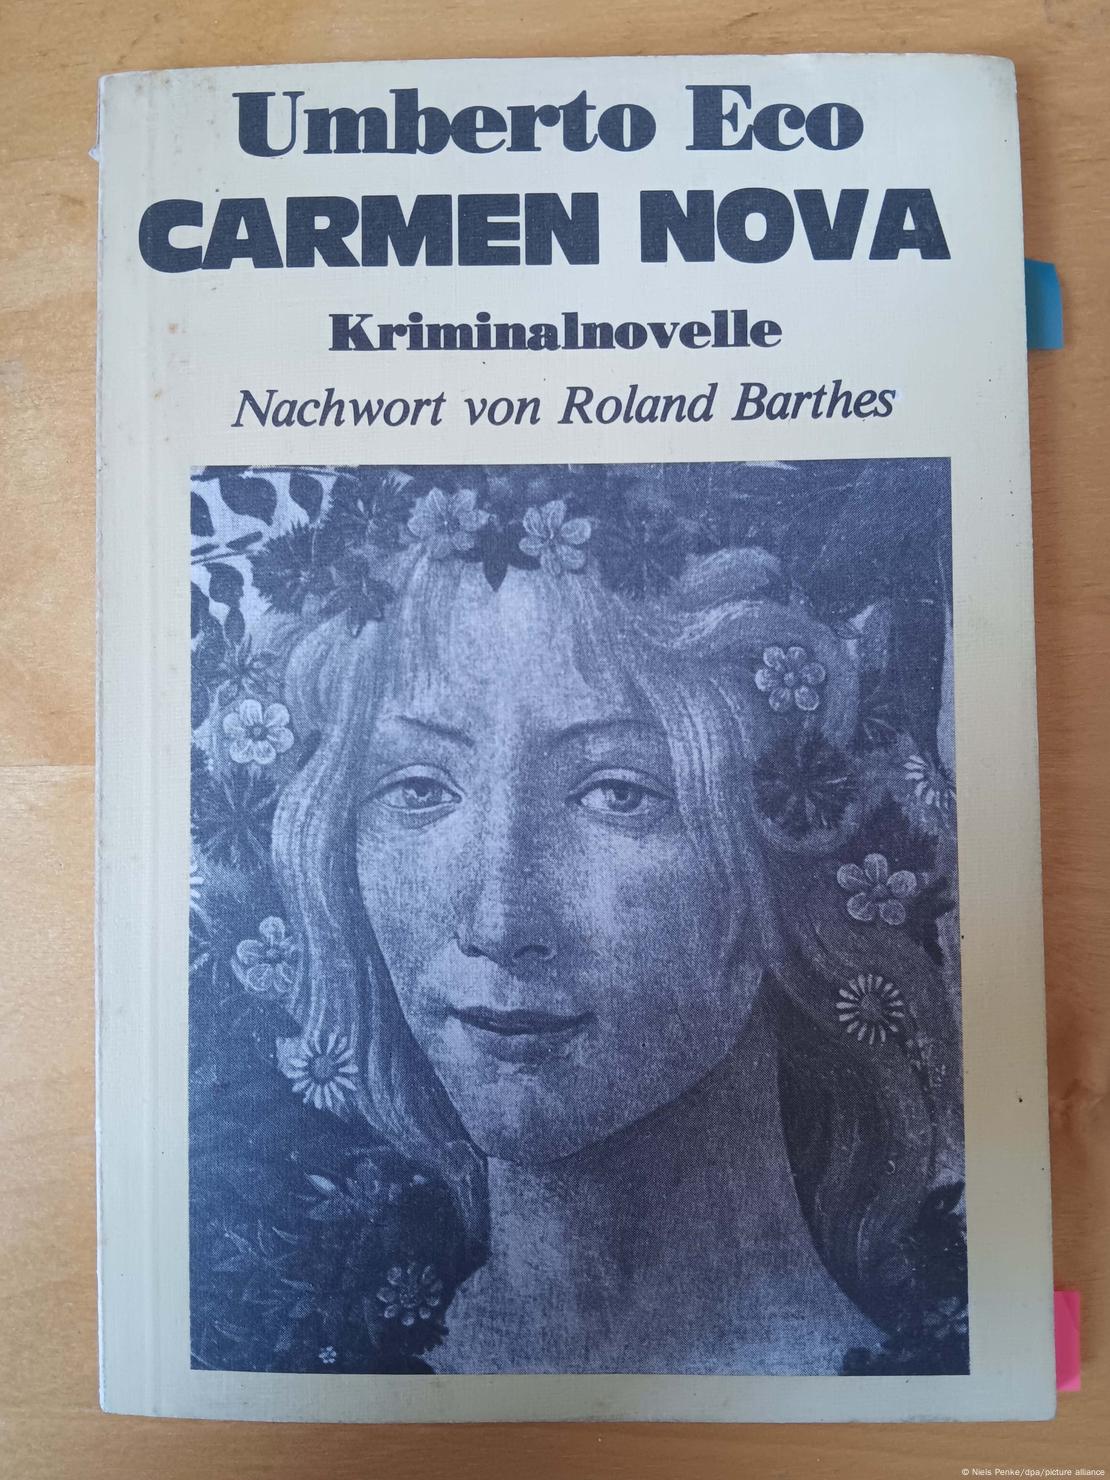 Το εξώφυλλο του επίμαχου βιβλίου "Carmen Nova"